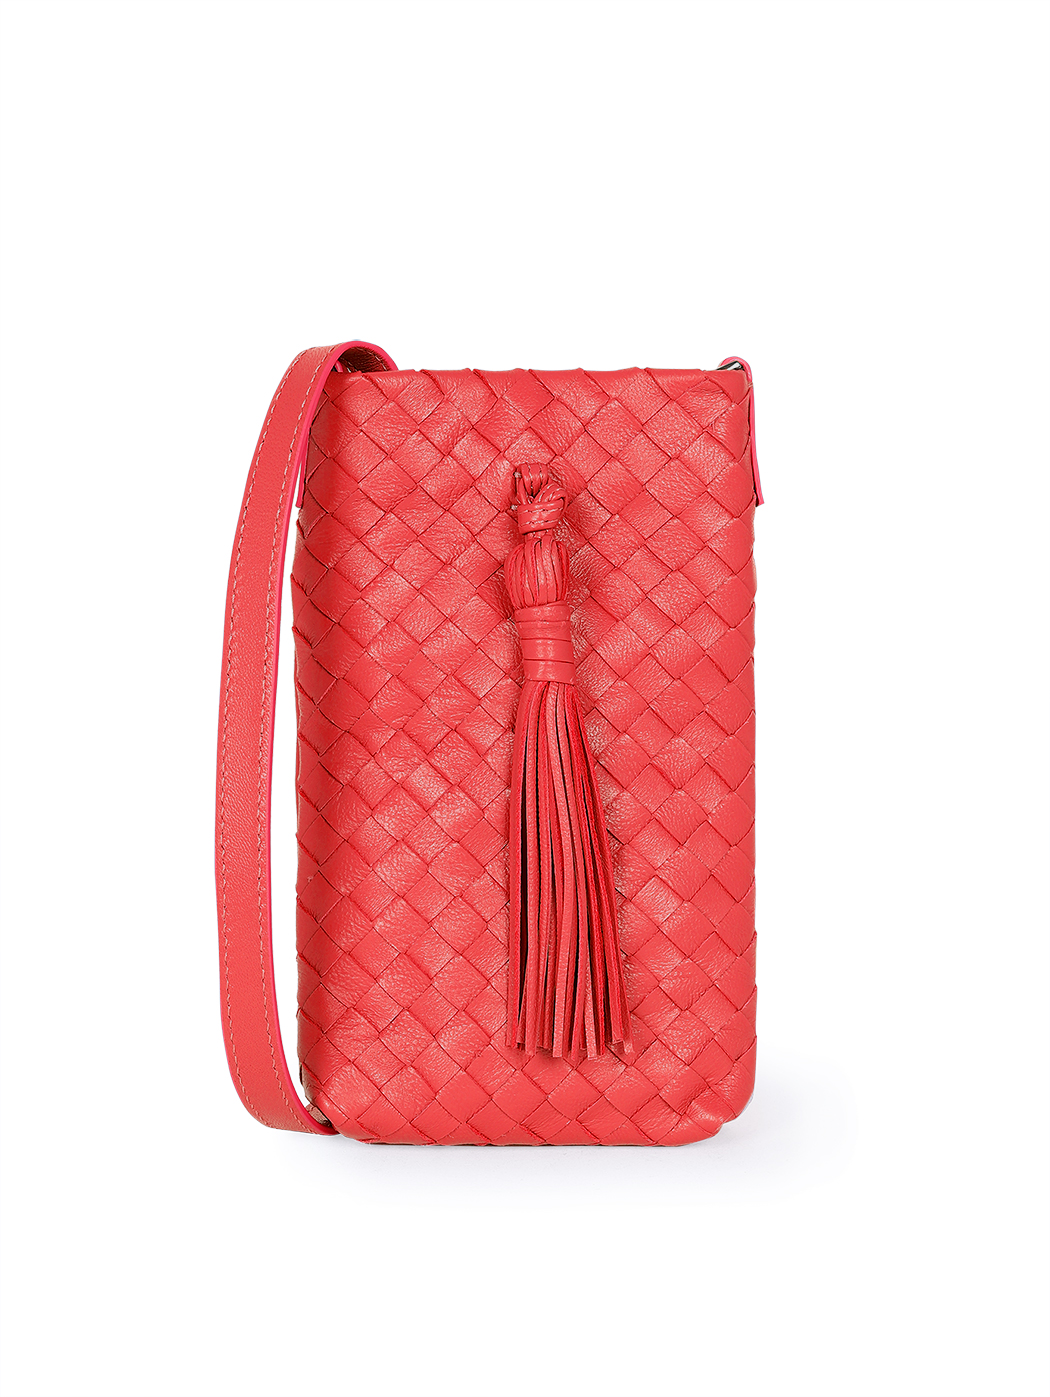 Плетеная сумочка кросс – боди для телефона коллекции Intrecci красного цвета